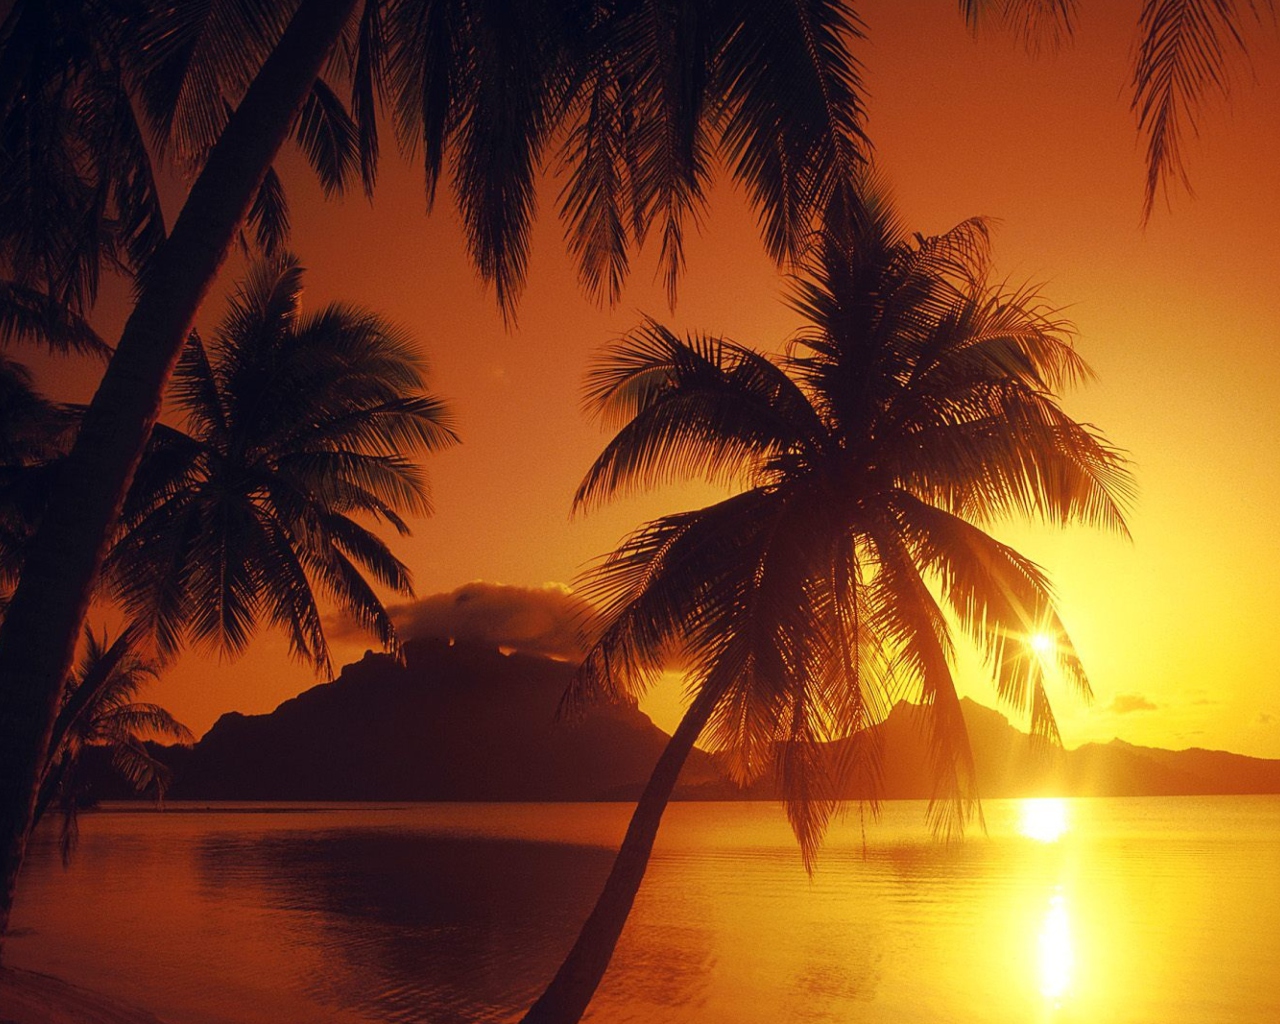 Sfondi Palms At Sunset 1280x1024